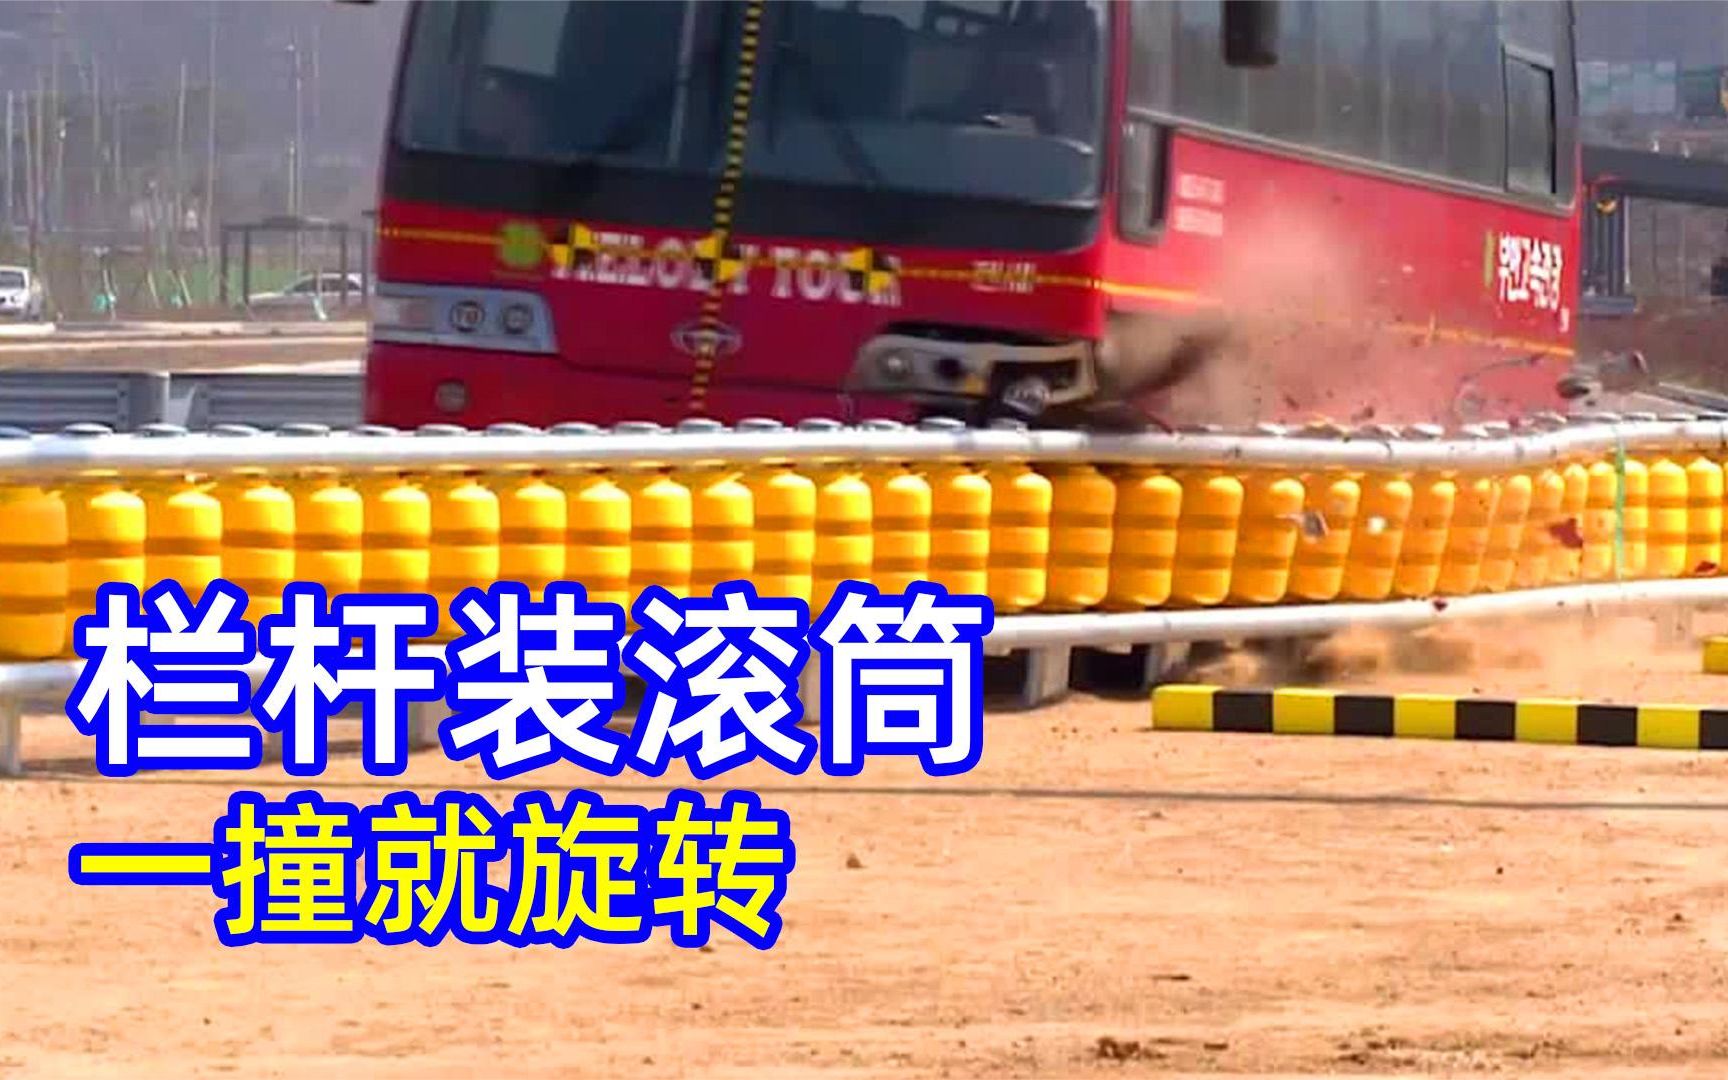 为什么韩国要在栏杆上放满黄色滚筒，车子一撞就顺势打转